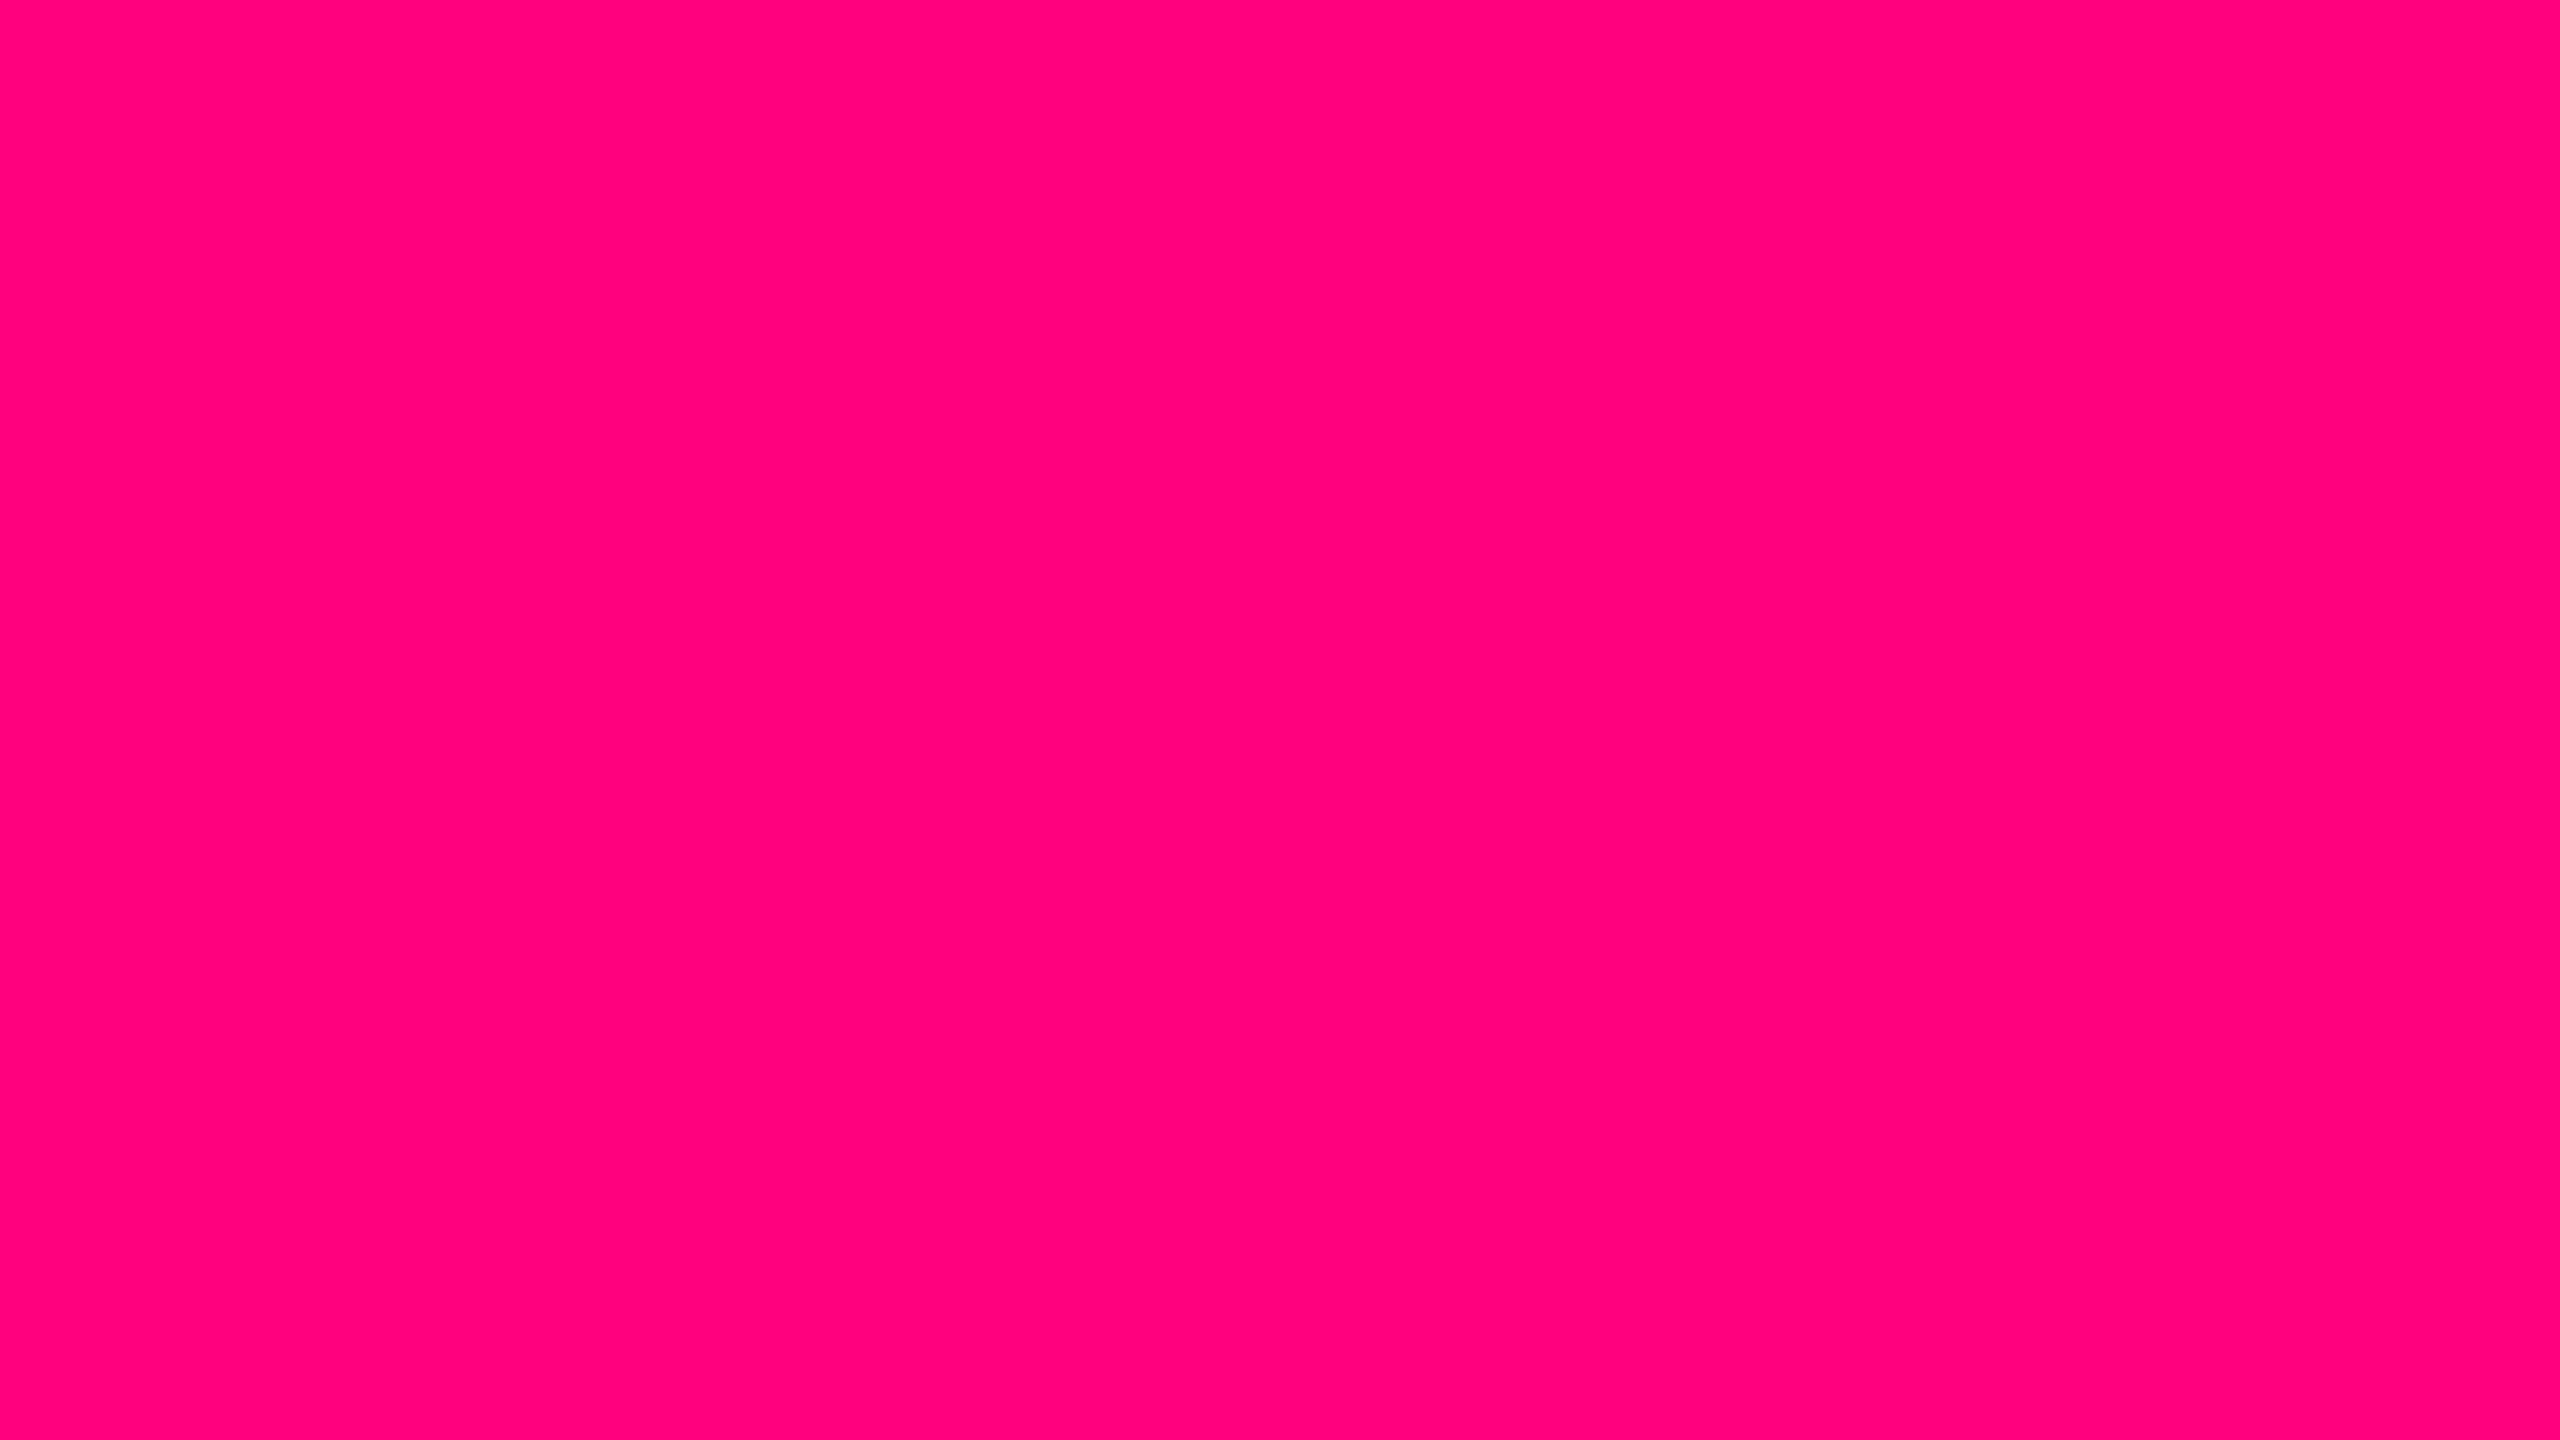 Nền màu hồng sáng đậm (Bright pink solid color background): Nền màu hồng sáng đậm tươi tắn này chắc chắn sẽ bật lên trên màn hình của bạn và làm tăng cảm xúc tích cực. Được tạo ra từ một màu sắc mạnh mẽ và chủ đạo, hình ảnh này là điểm nhấn hoàn hảo cho thiết kế của bạn. Hãy xem ngay để cảm nhận sự năng động và tự tin của màu hồng sáng đậm!